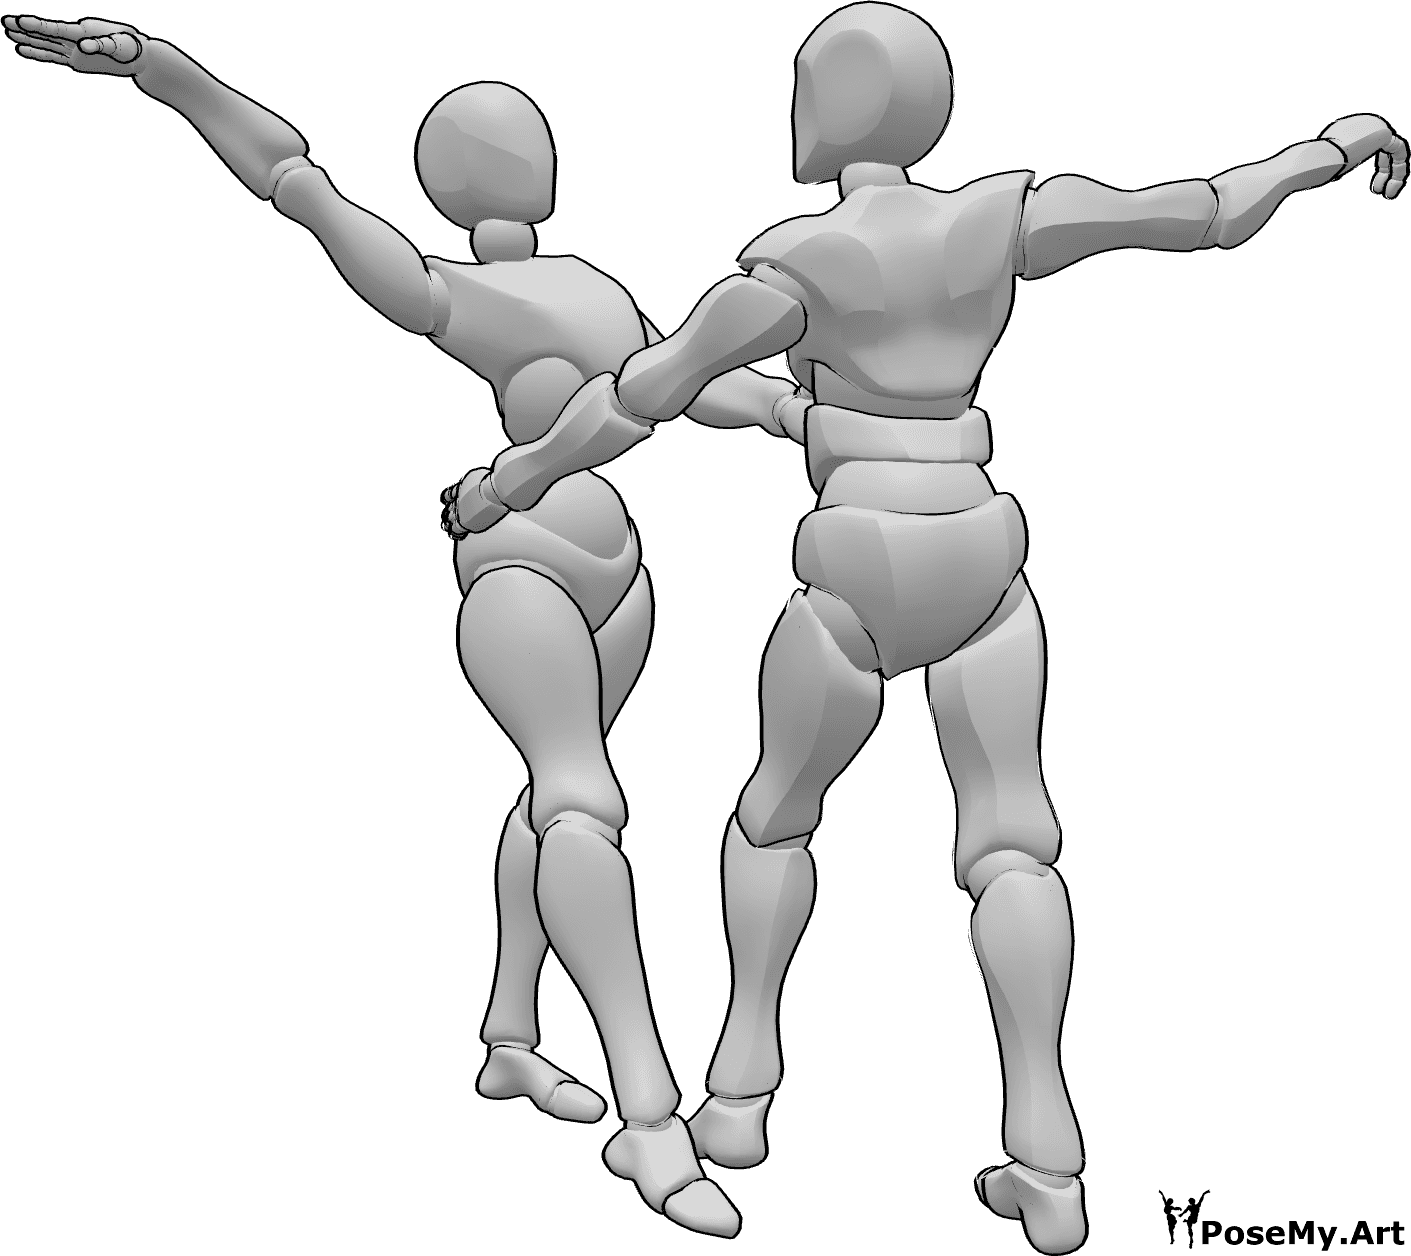 Référence des poses- Pose du duo dansant - Femme et homme dansant ensemble pose